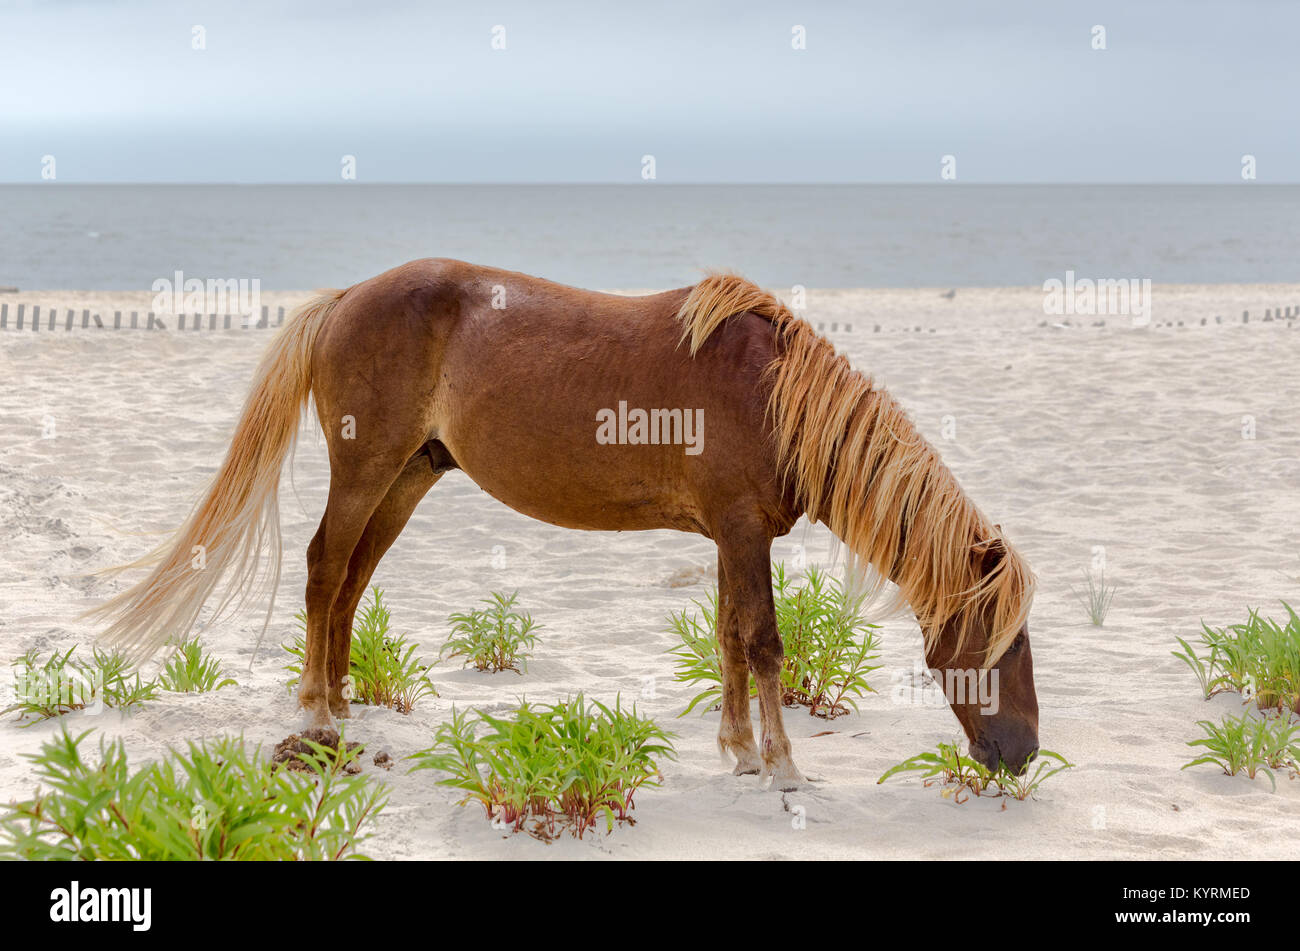 Un pony selvatici, cavallo, di Assateague Island, Maryland, Stati Uniti d'America sulla spiaggia. Questi animali sono noti anche come Assateague cavalli o pony Chincoteague. Foto Stock